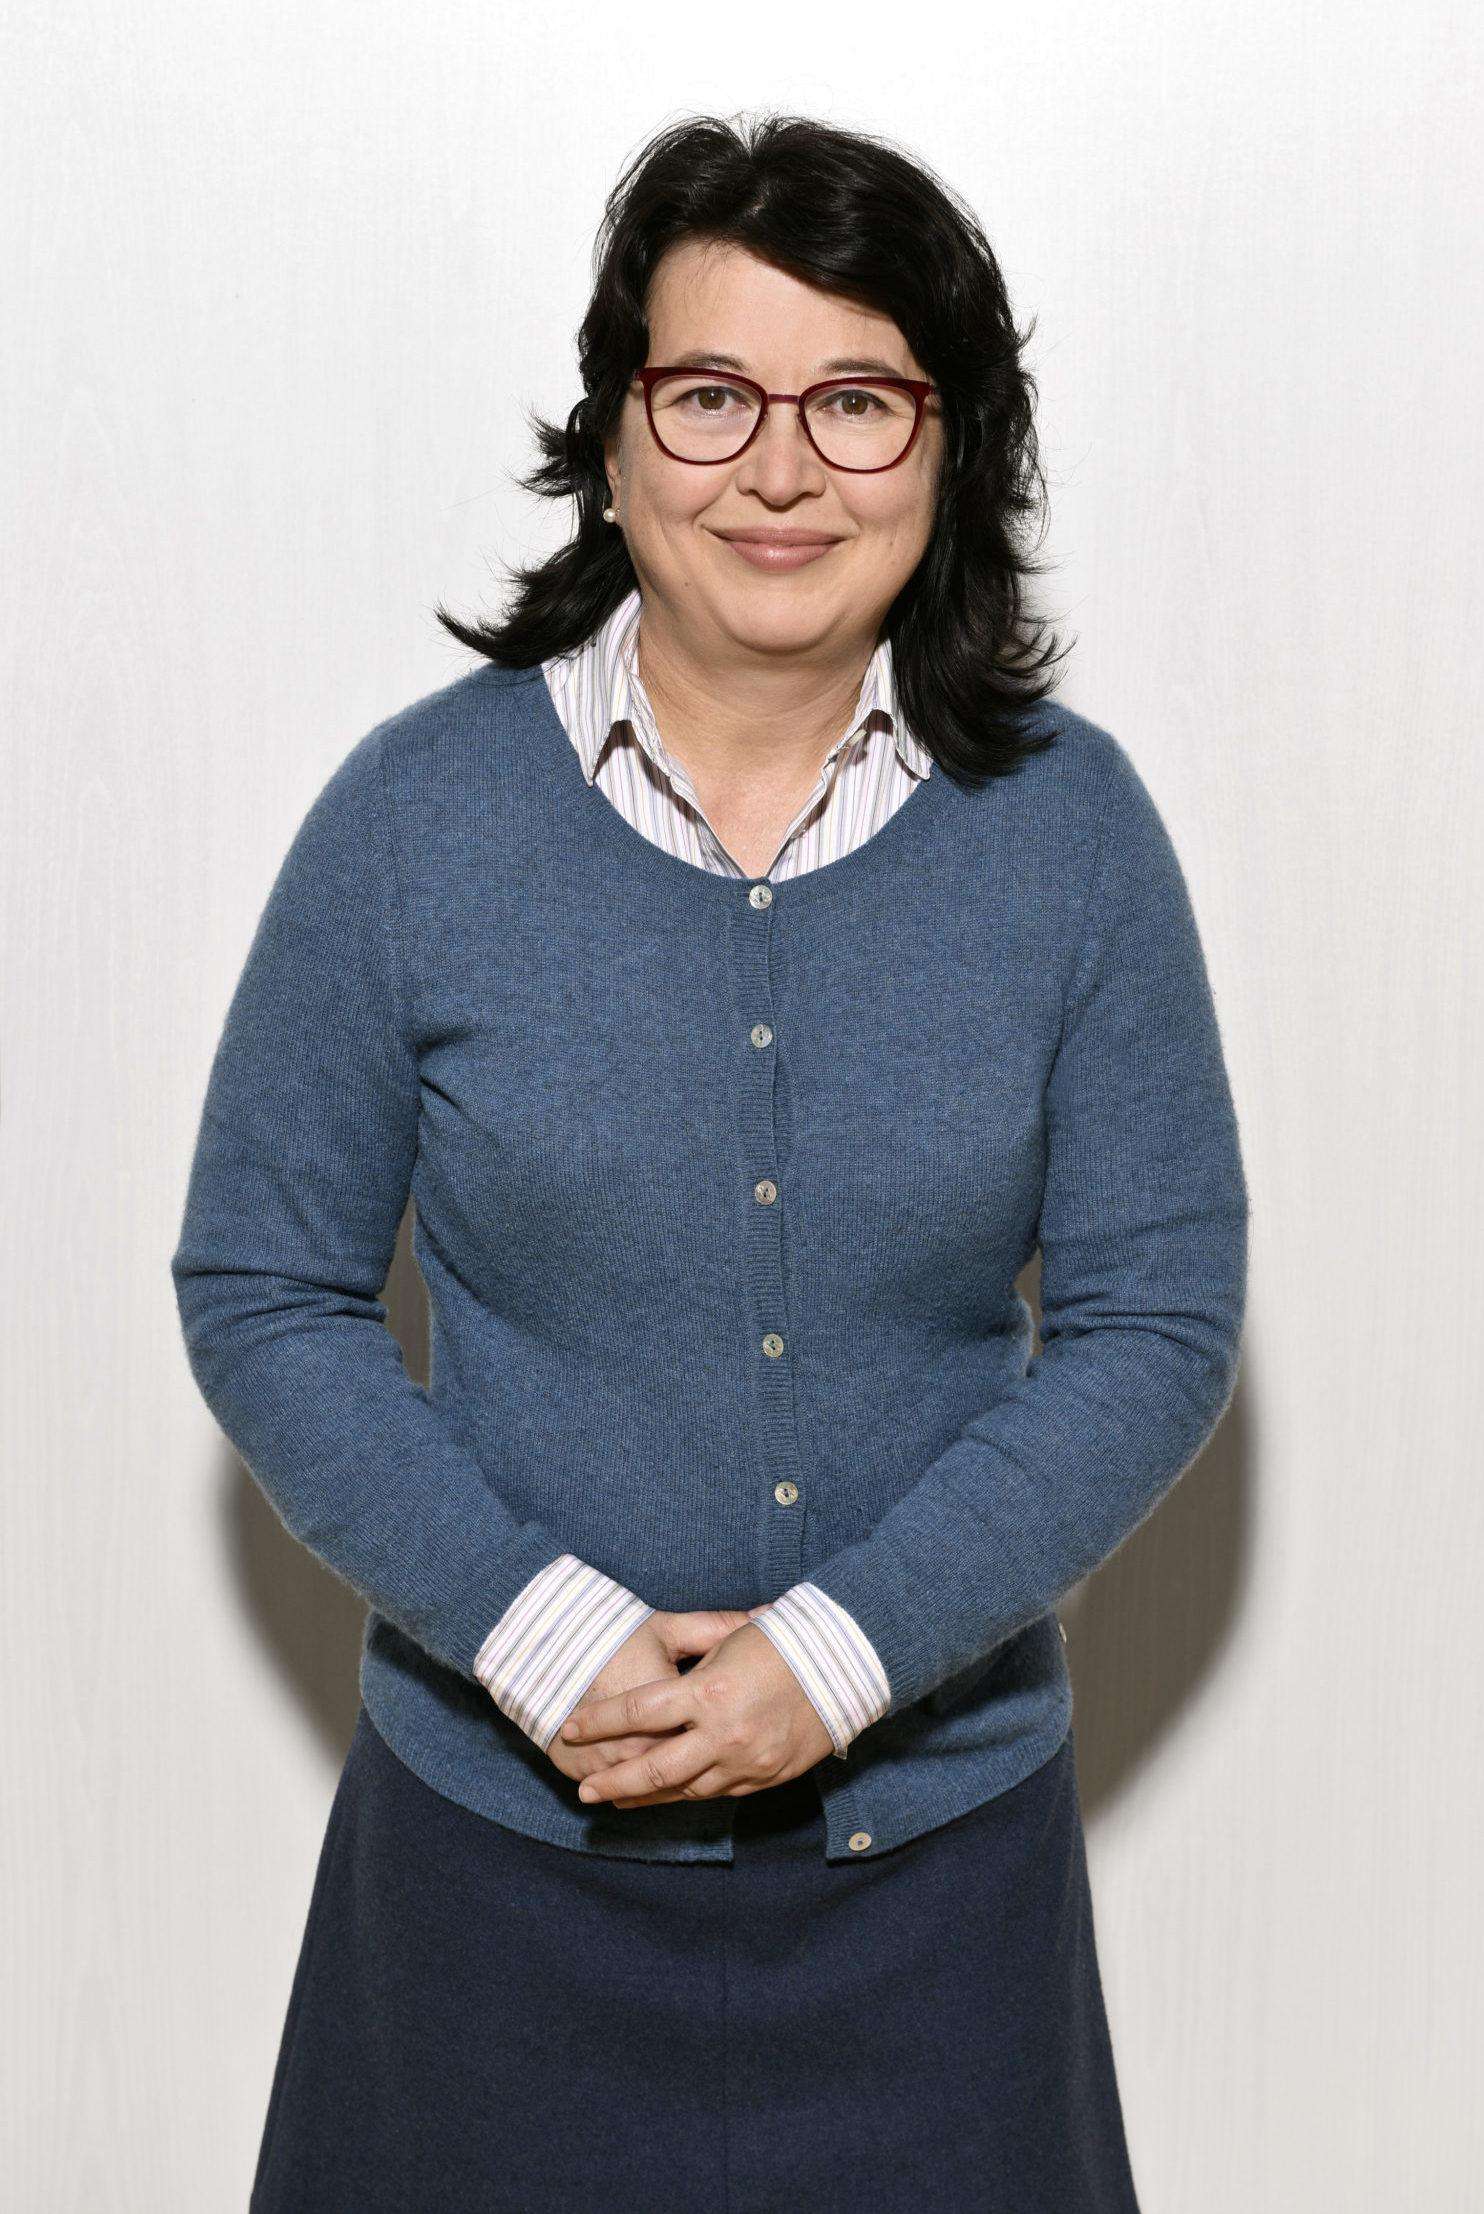 Karin Kohler, Finanzvorständin